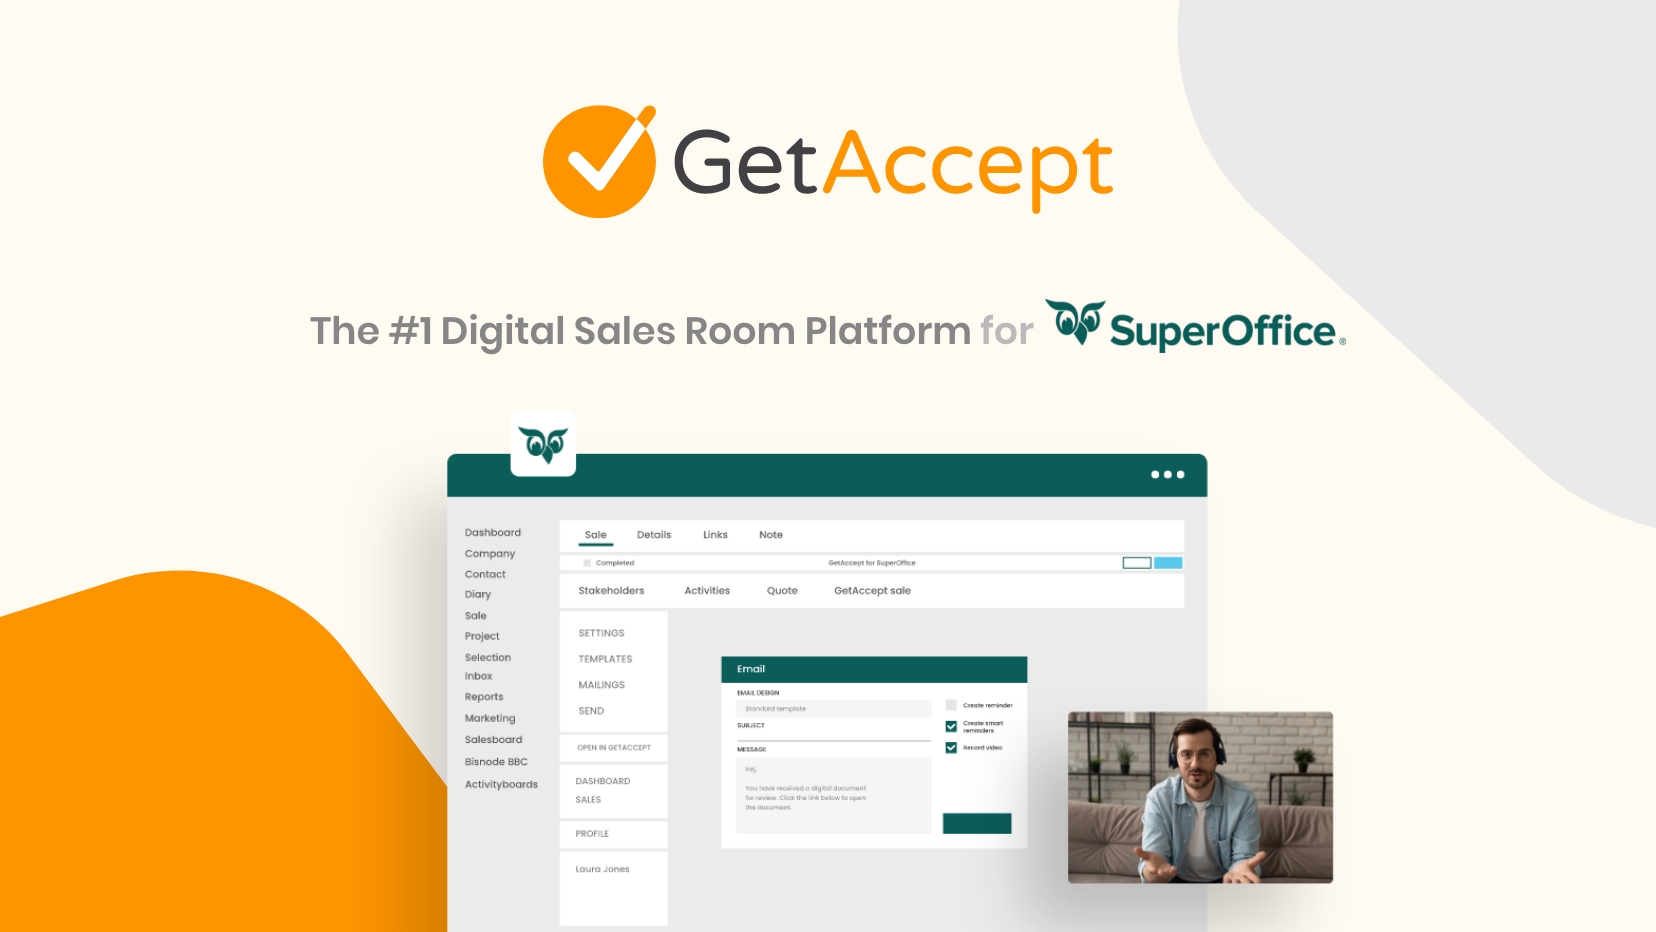 The #1 Digital Sales Room Platform for SuperOffice